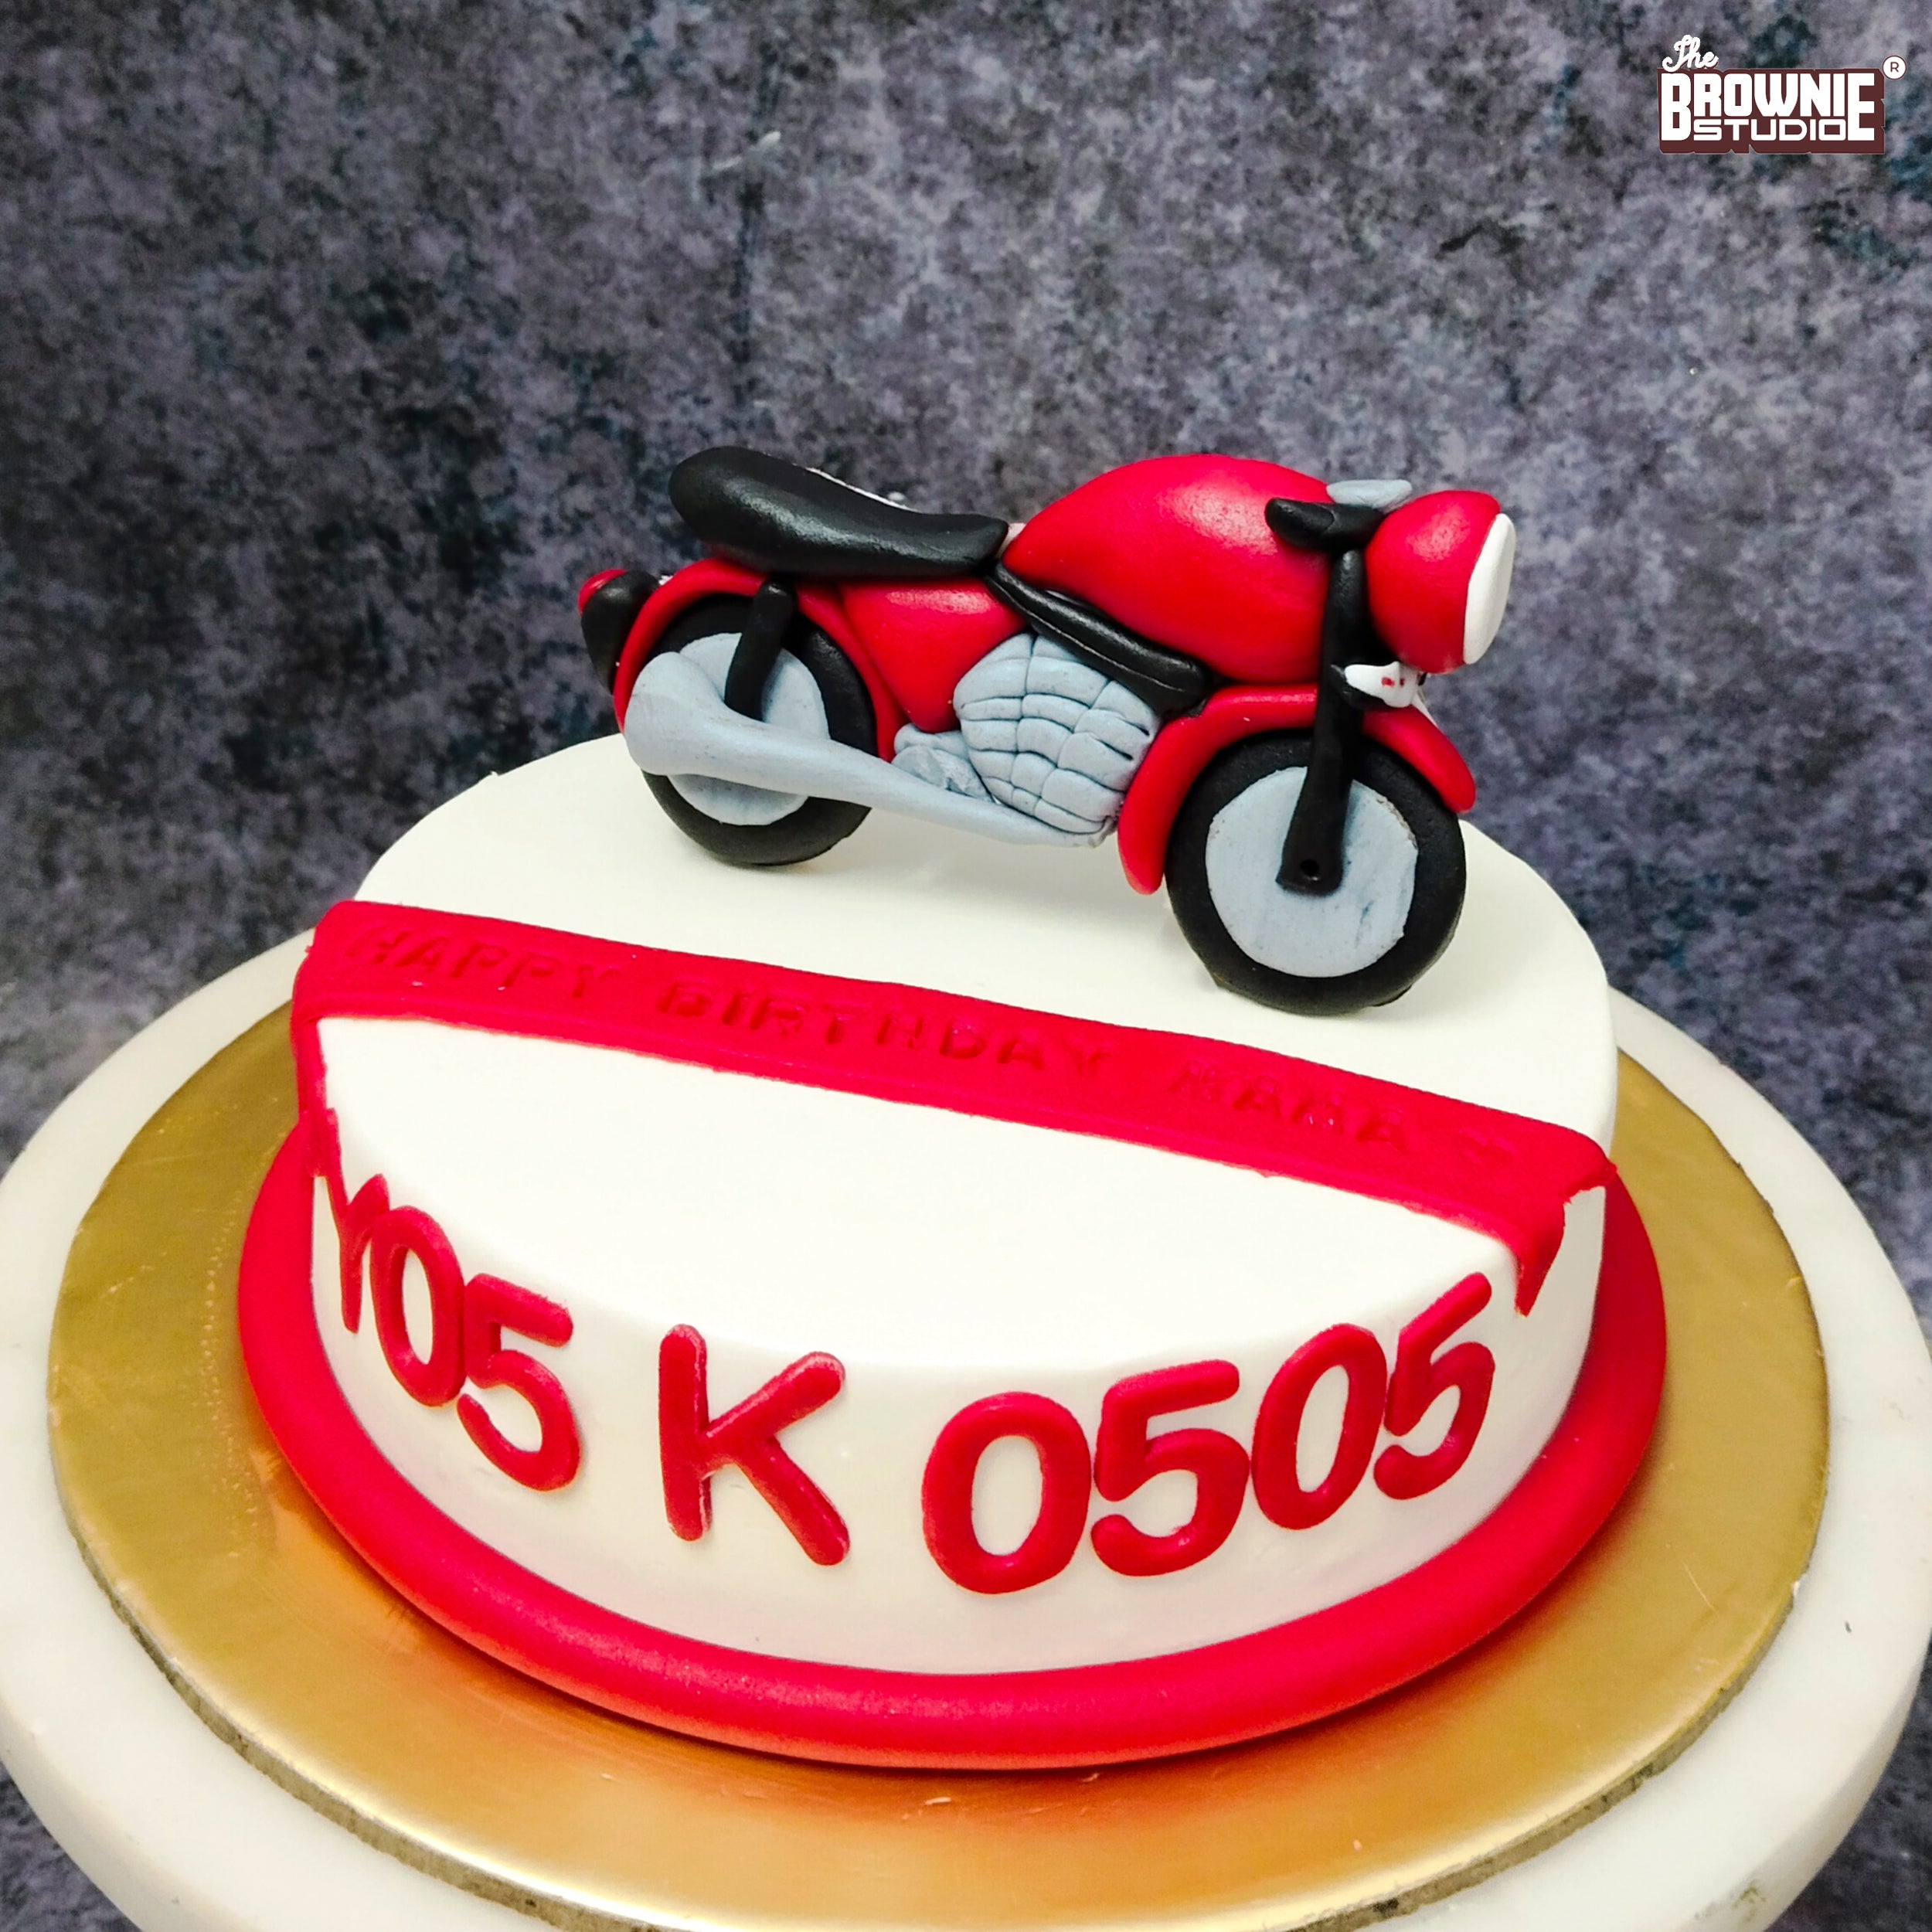 71 Motorcycle Cakes ideas | motorcycle cake, bike cakes, motorbike cake